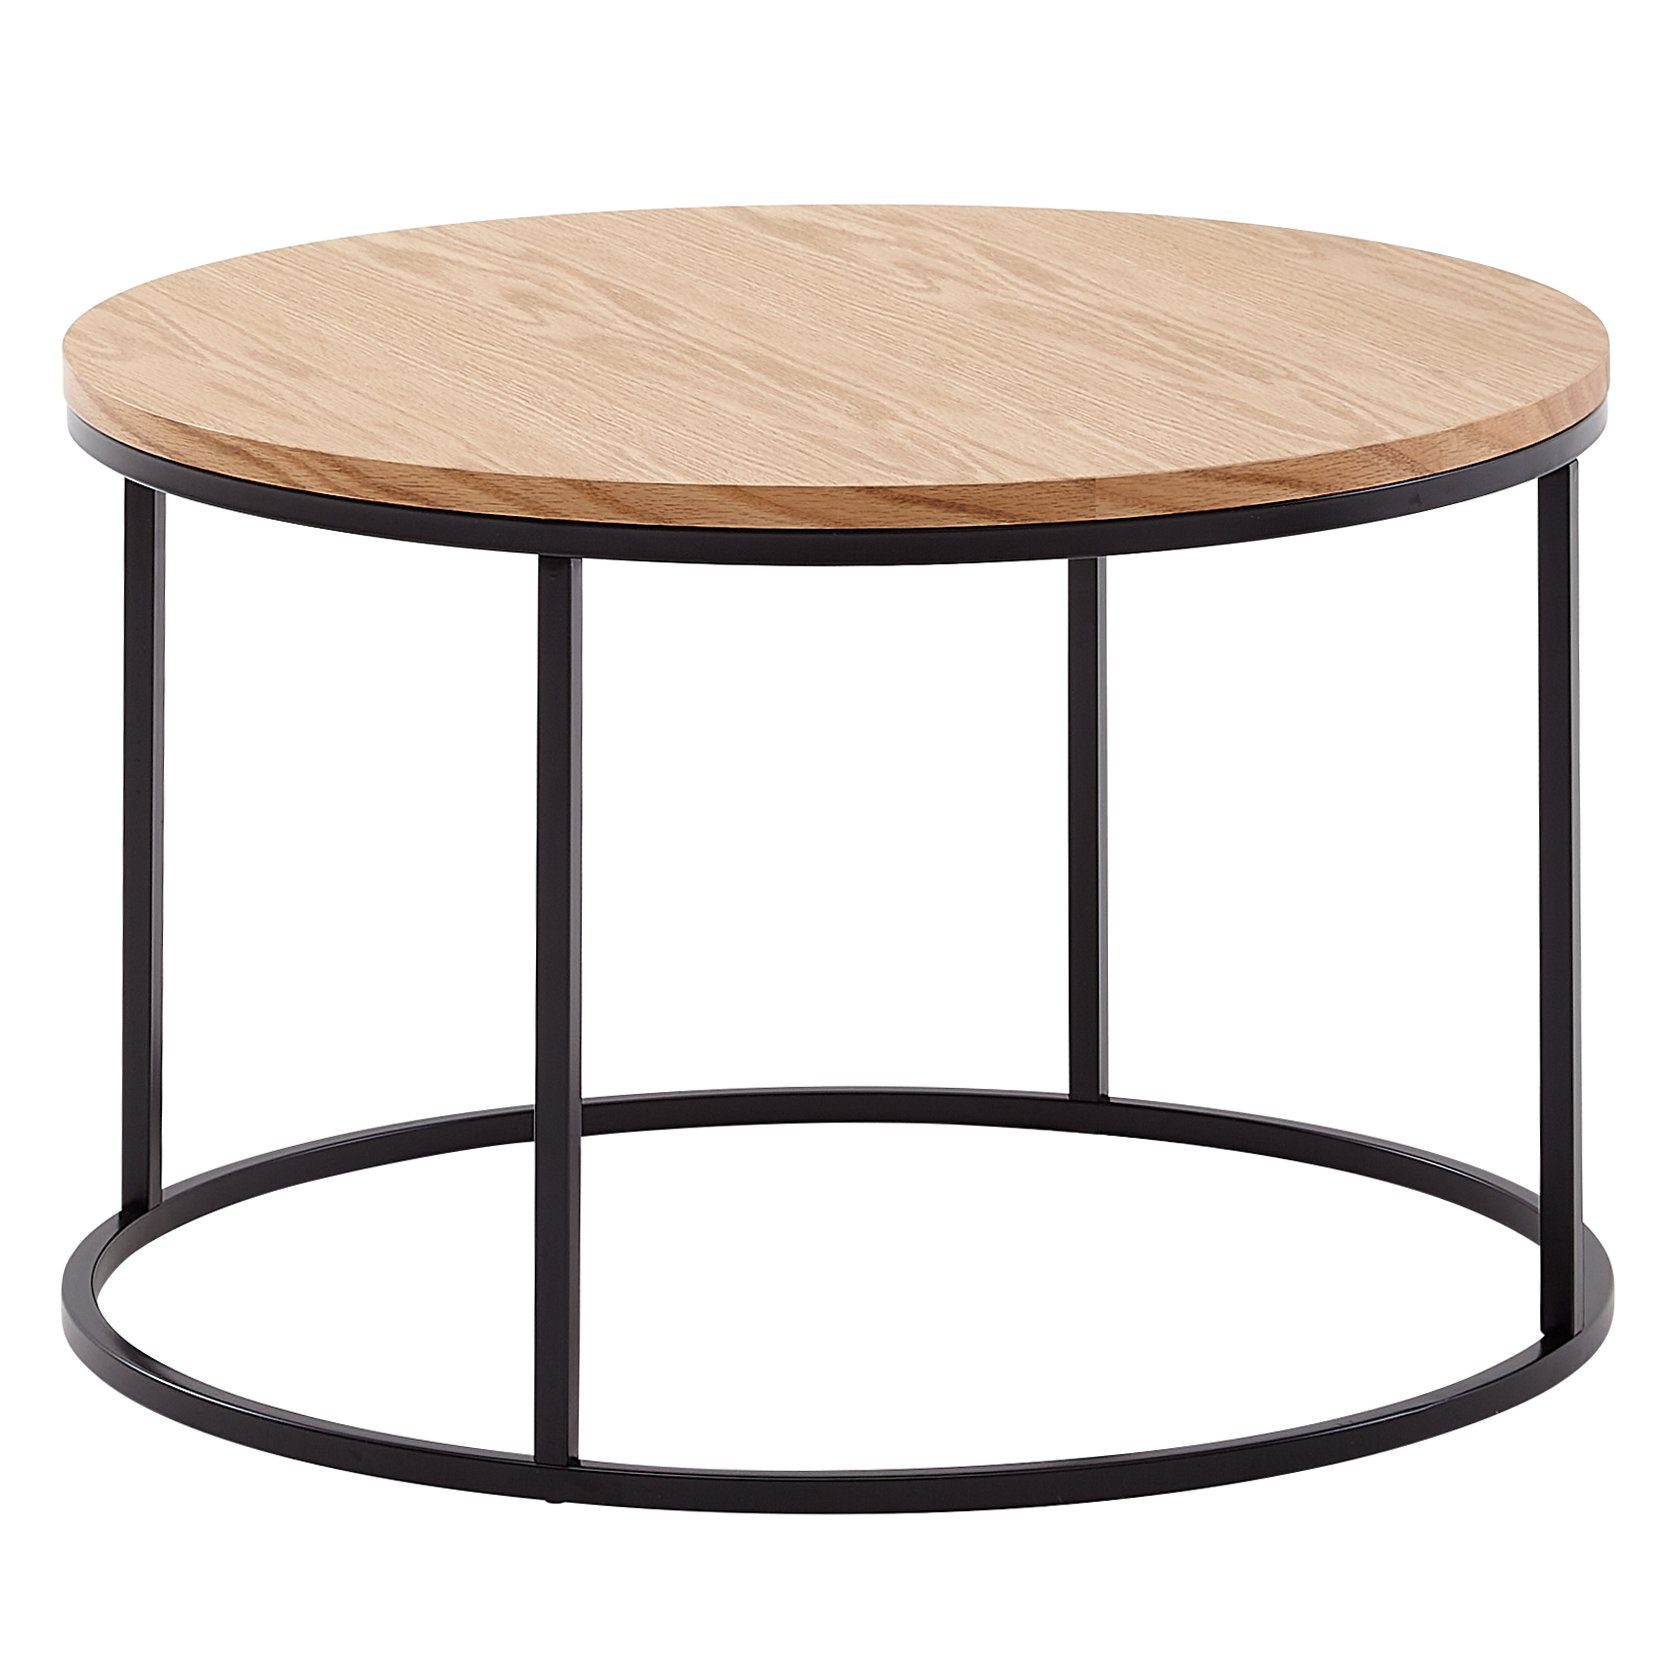 [Zuerst vertrauen] Wohnling Couchtisch WL6.511 (70x70x45 Sofatisch Eiche), Metall, Design Wohnzimmertisch Kaffeetisch / Modern Tisch Rund, cm Holz